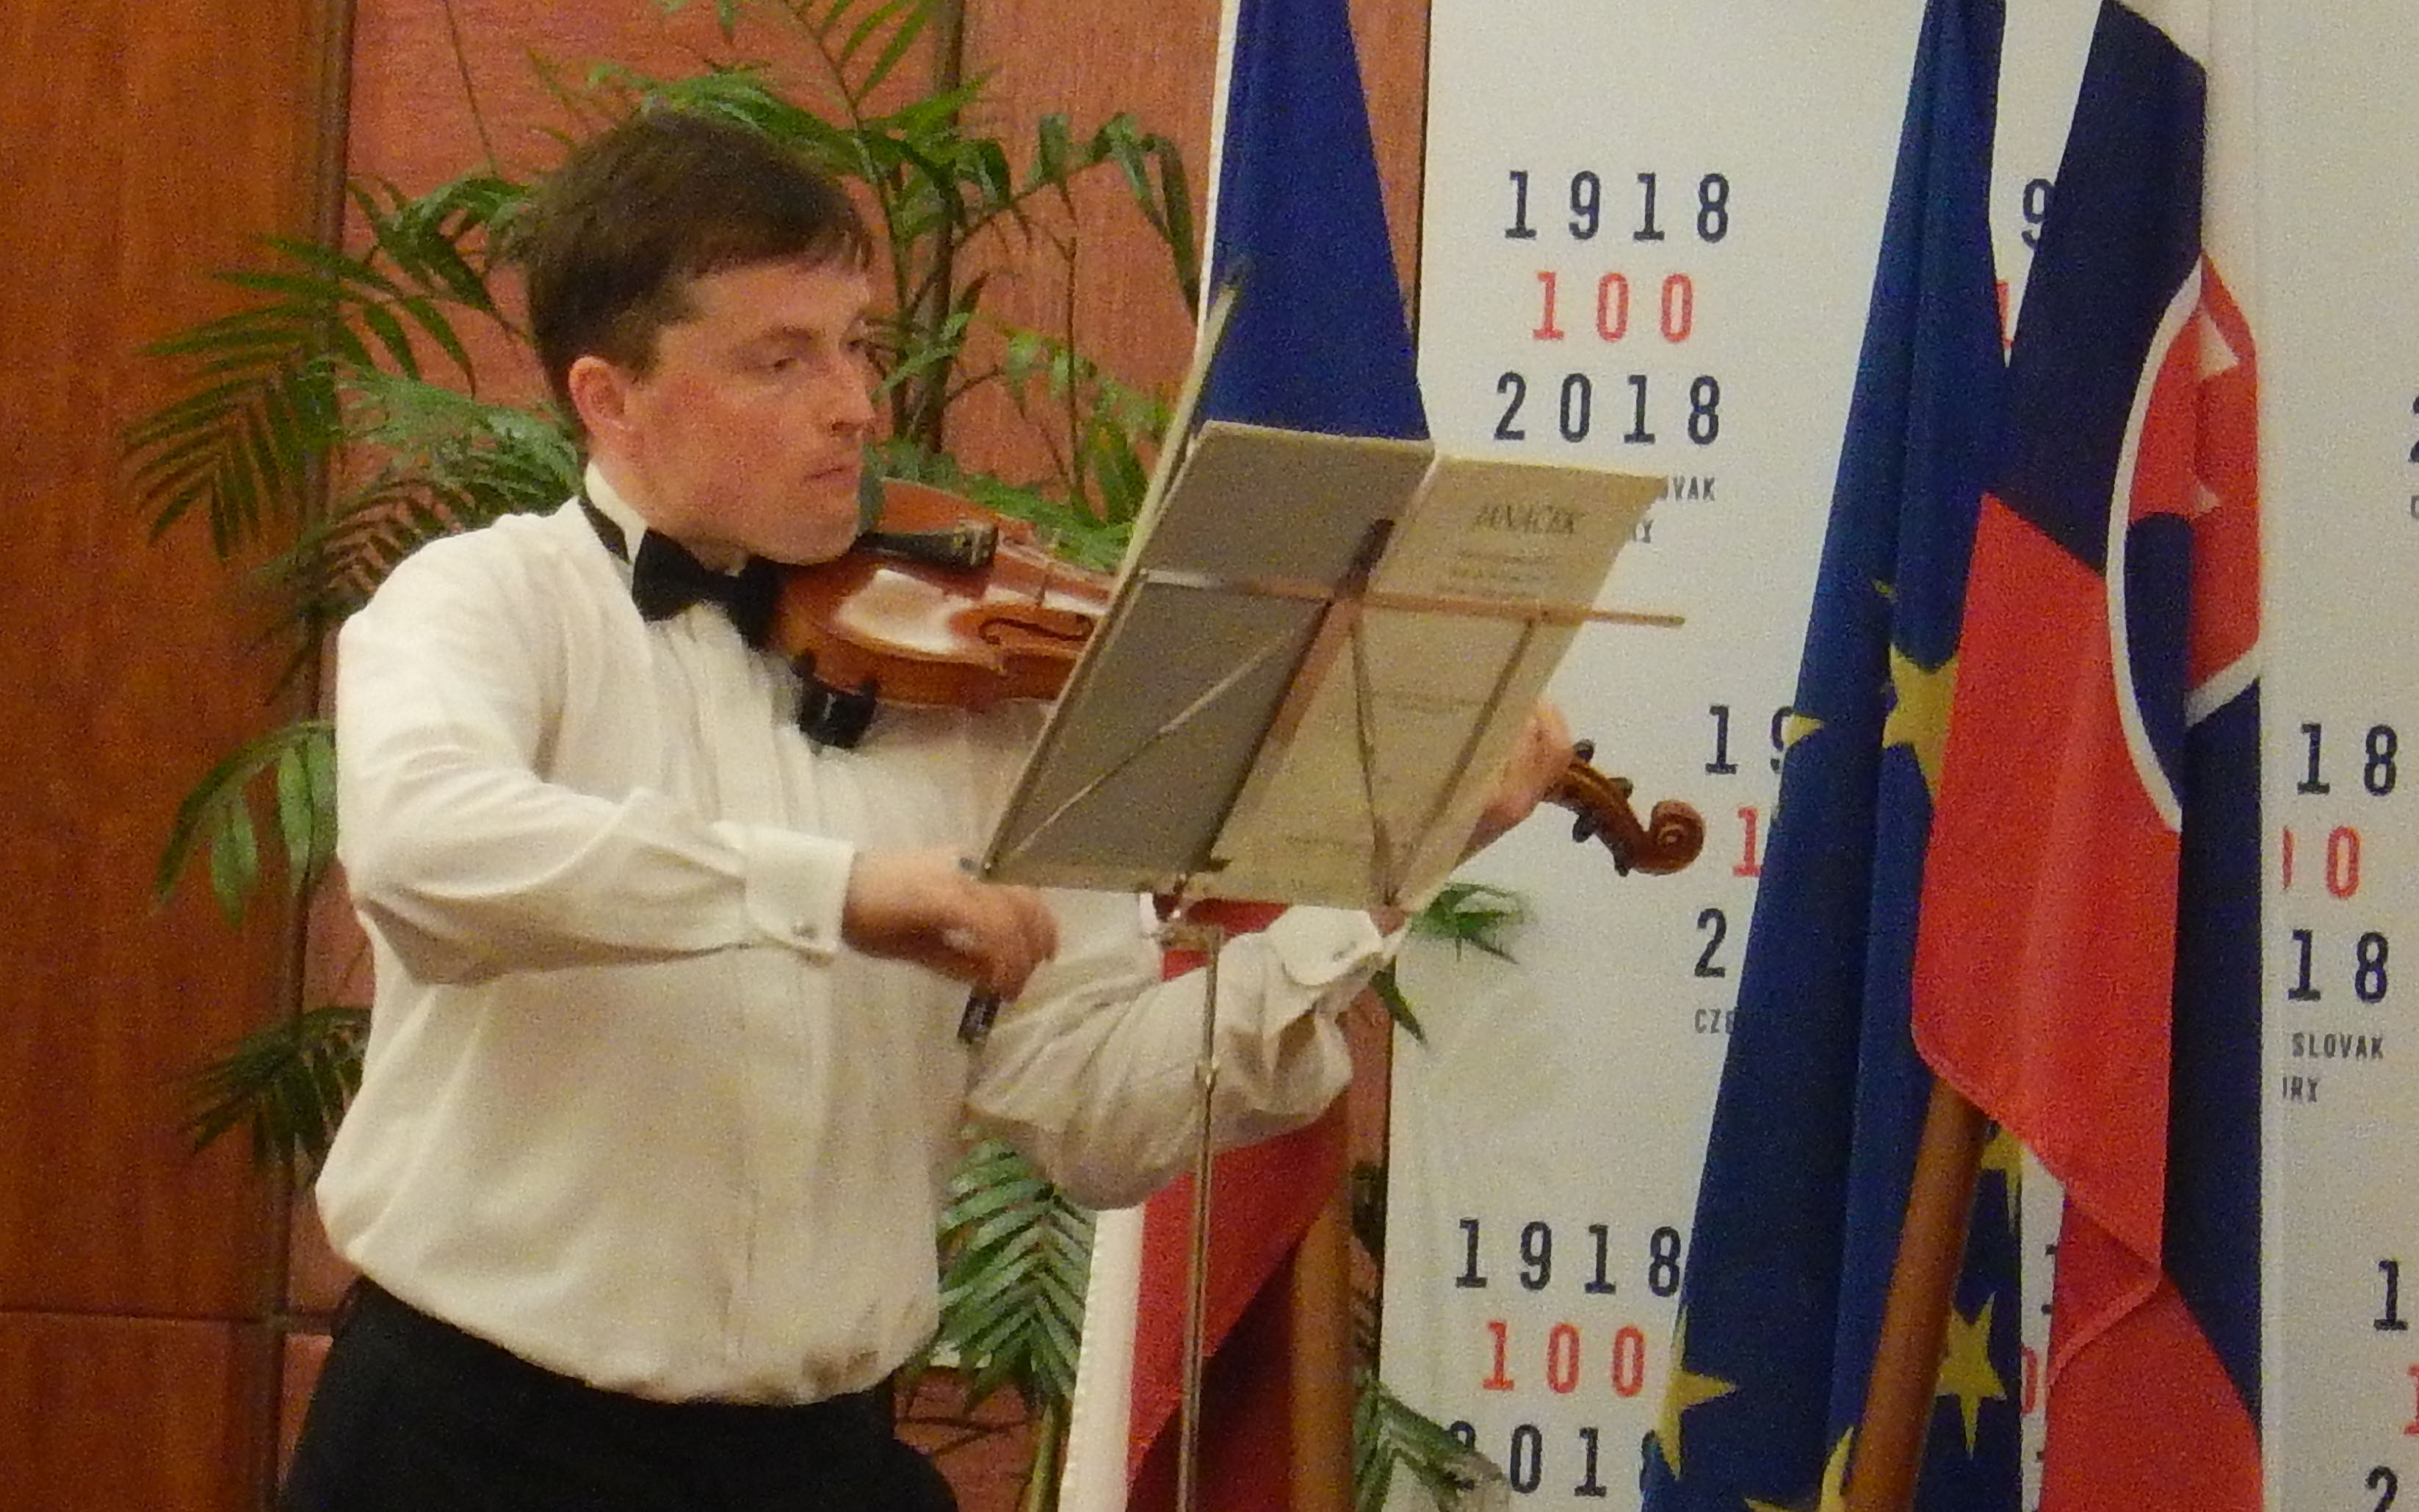  Dua Musisi Satukan Ceko dan Slovakia Lewat Musik Klasik  